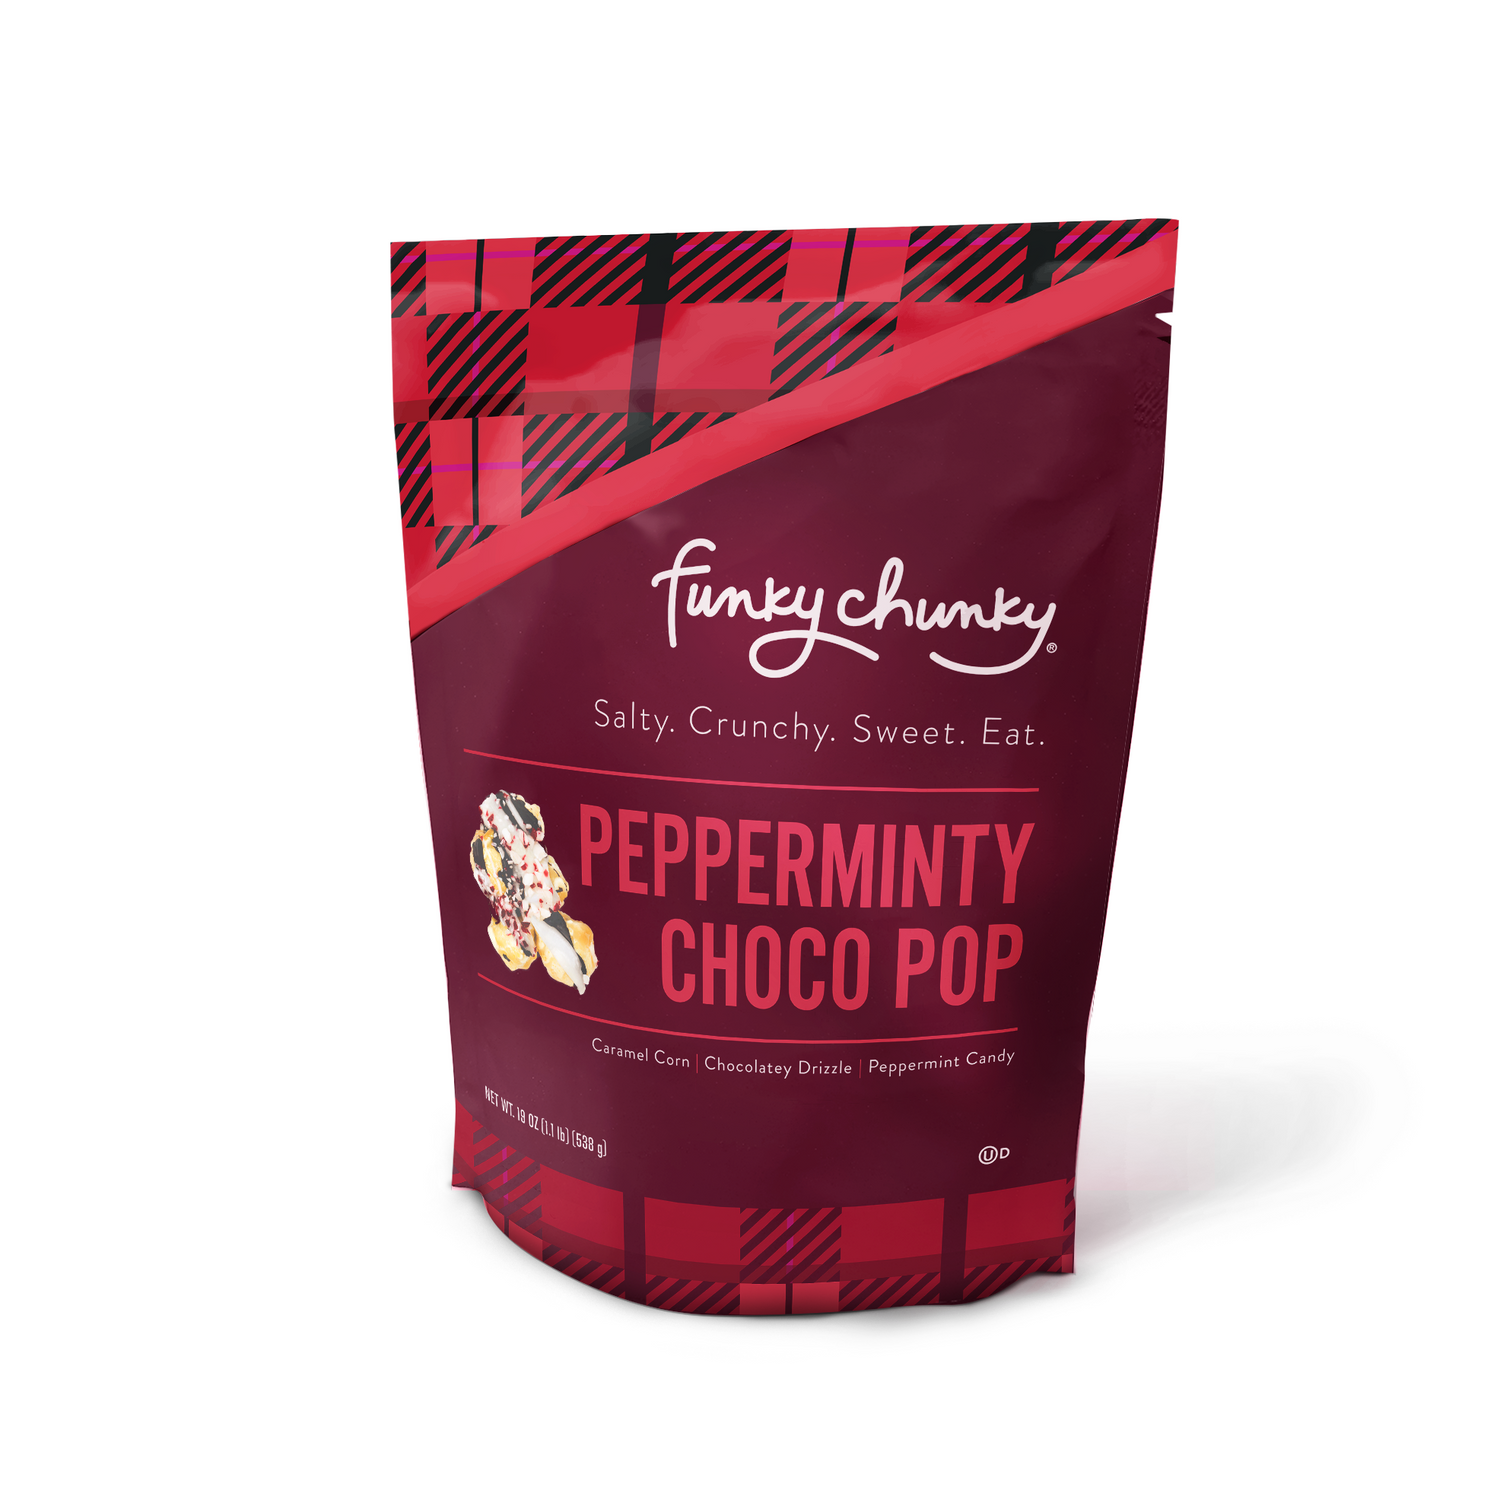 NEW Pepperminty Choco Pop XLarge 19oz Bag